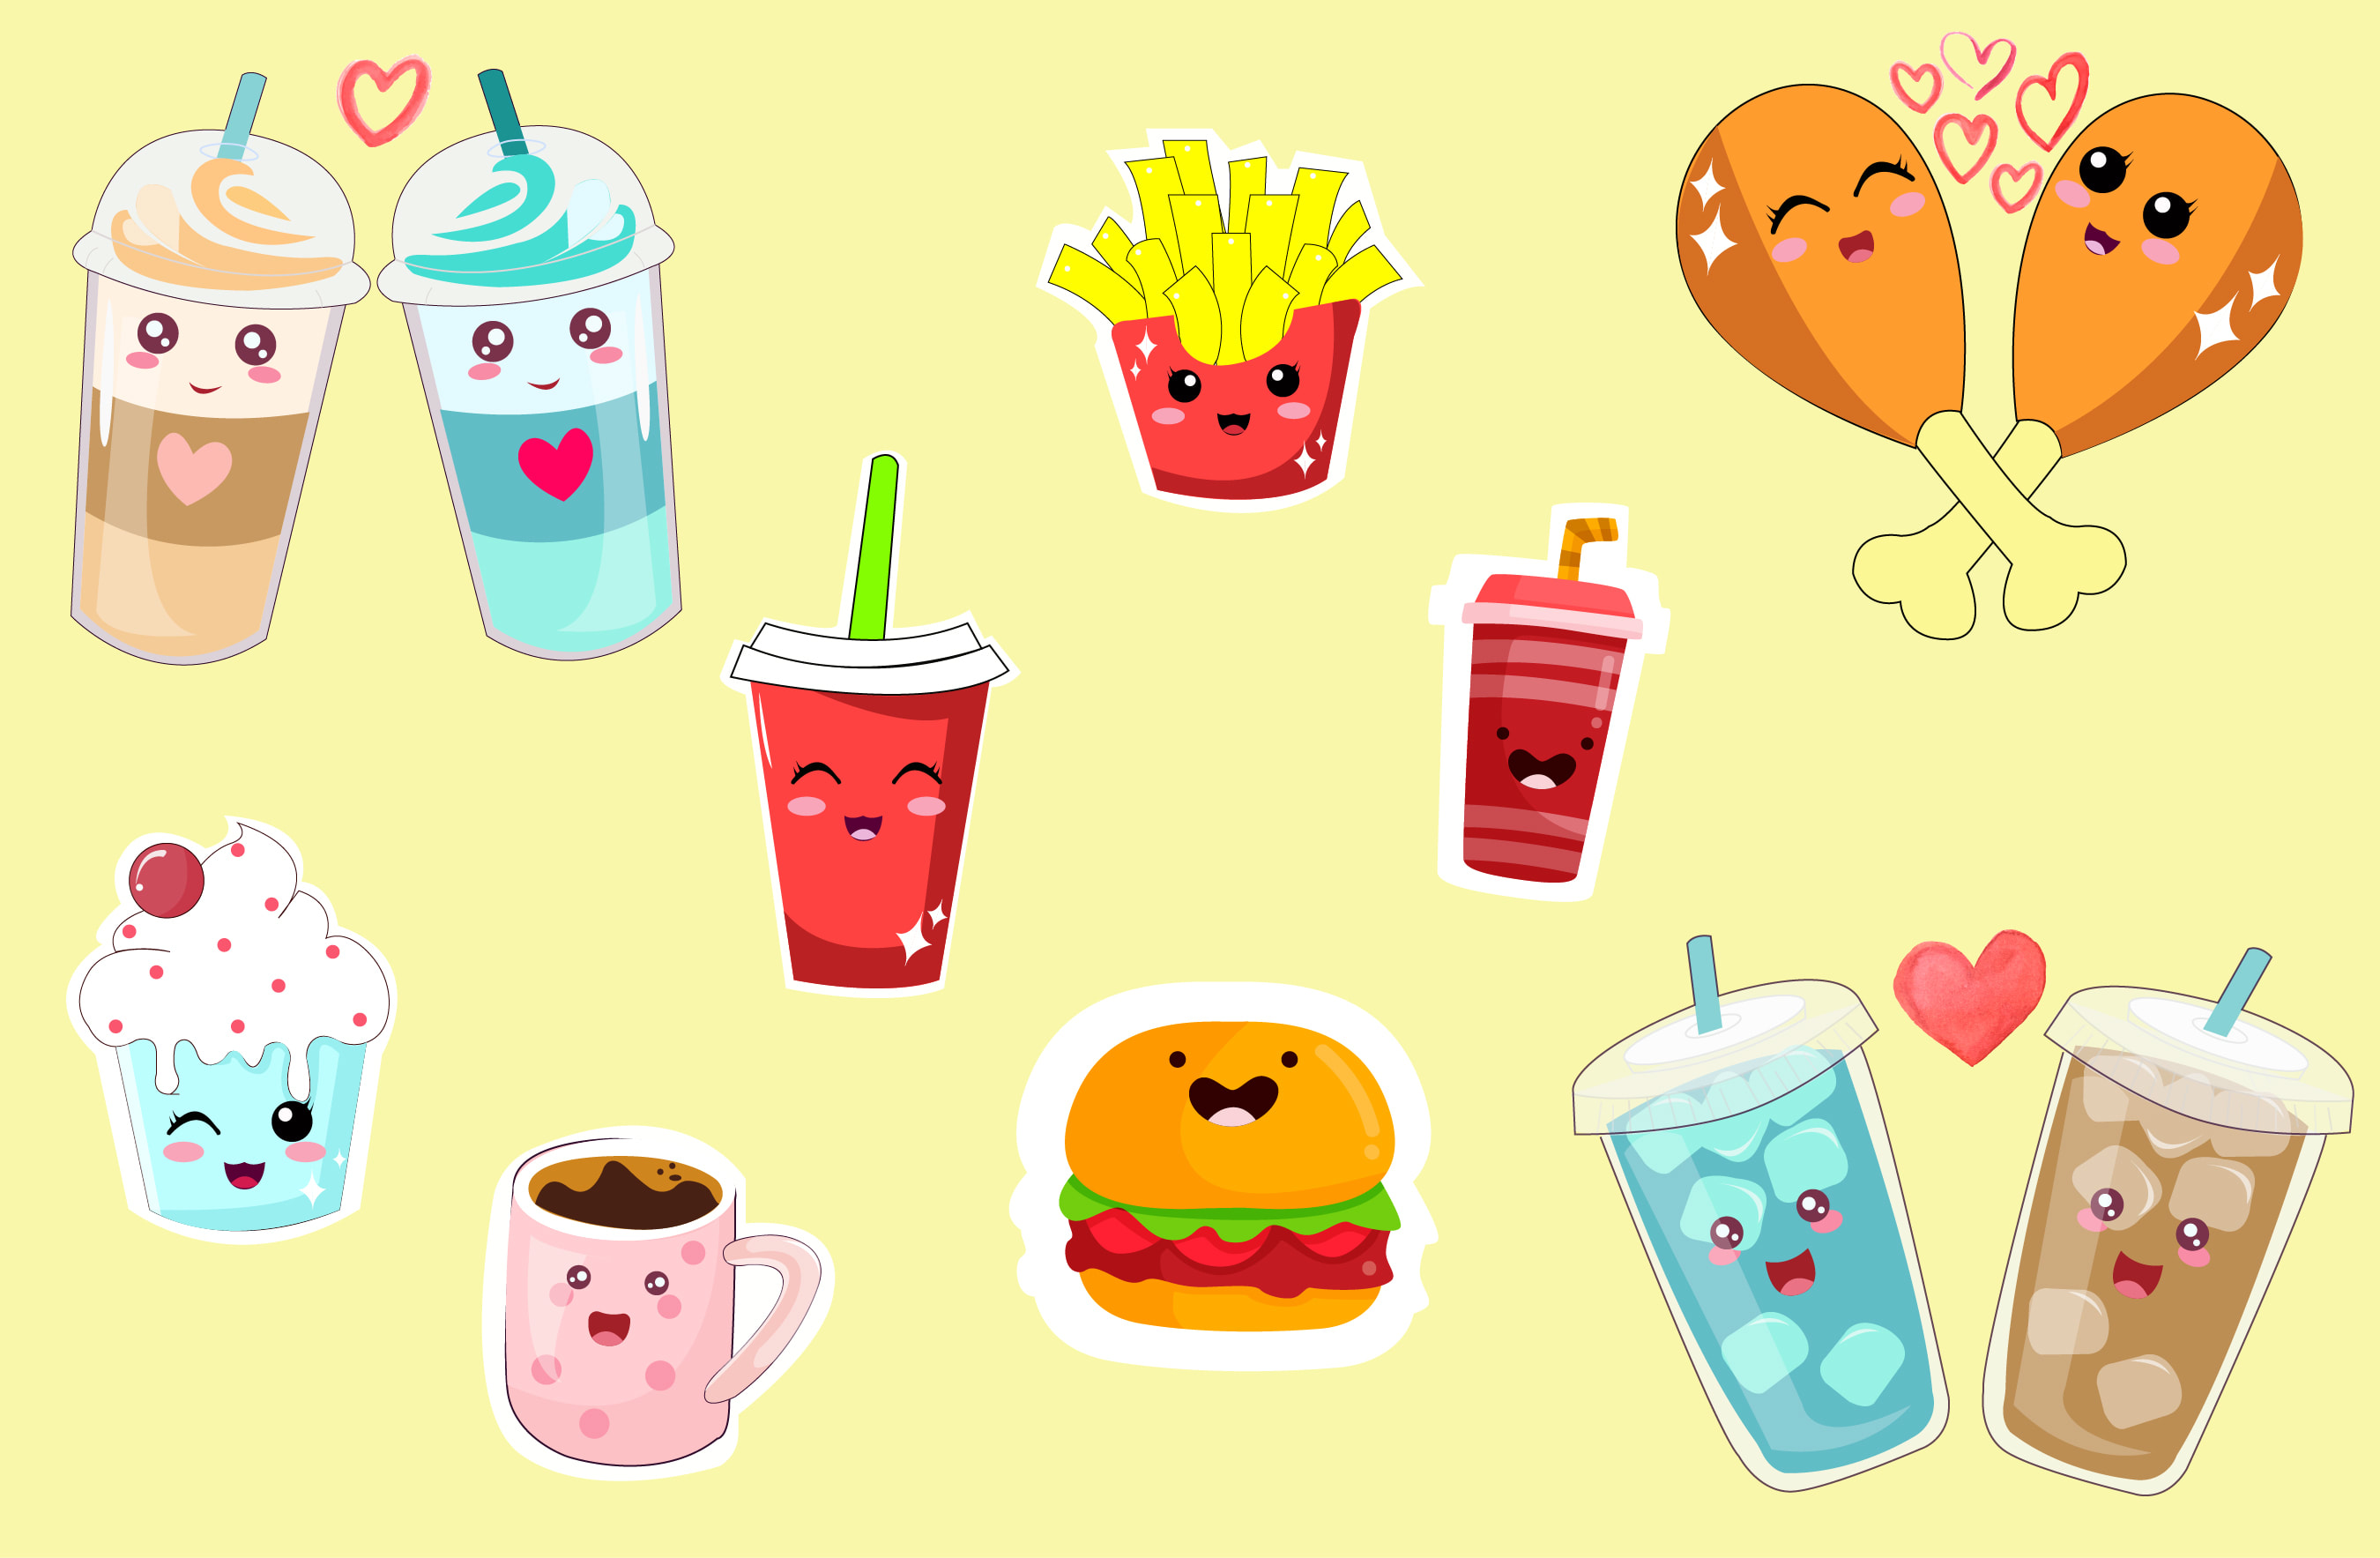 Design cute food stickers, emojis, character by Haniyafakhir | Fiverr